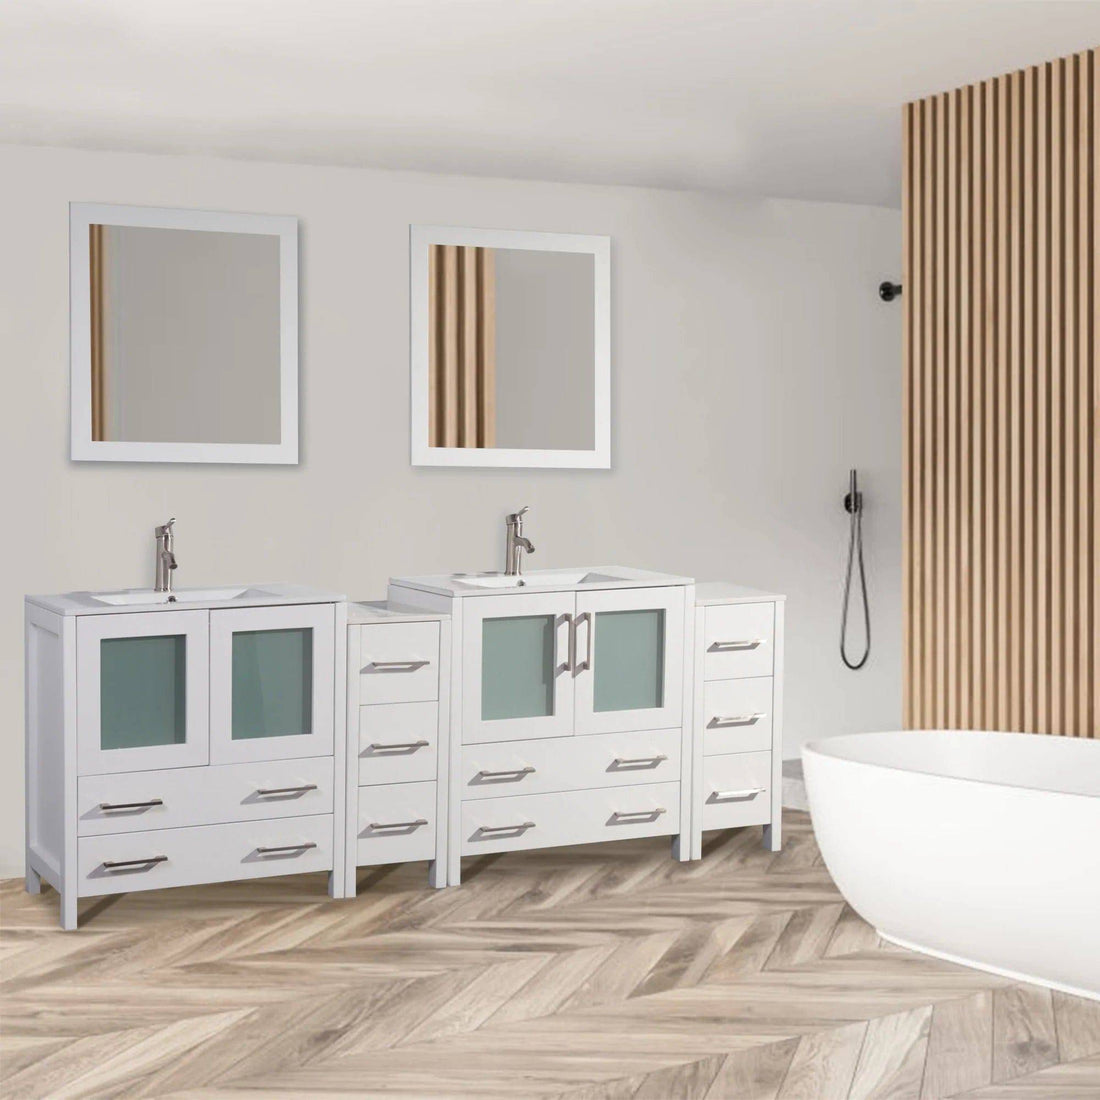 72 in. Double Sink Modern Bathroom Vanity Set in White - Decohub Home